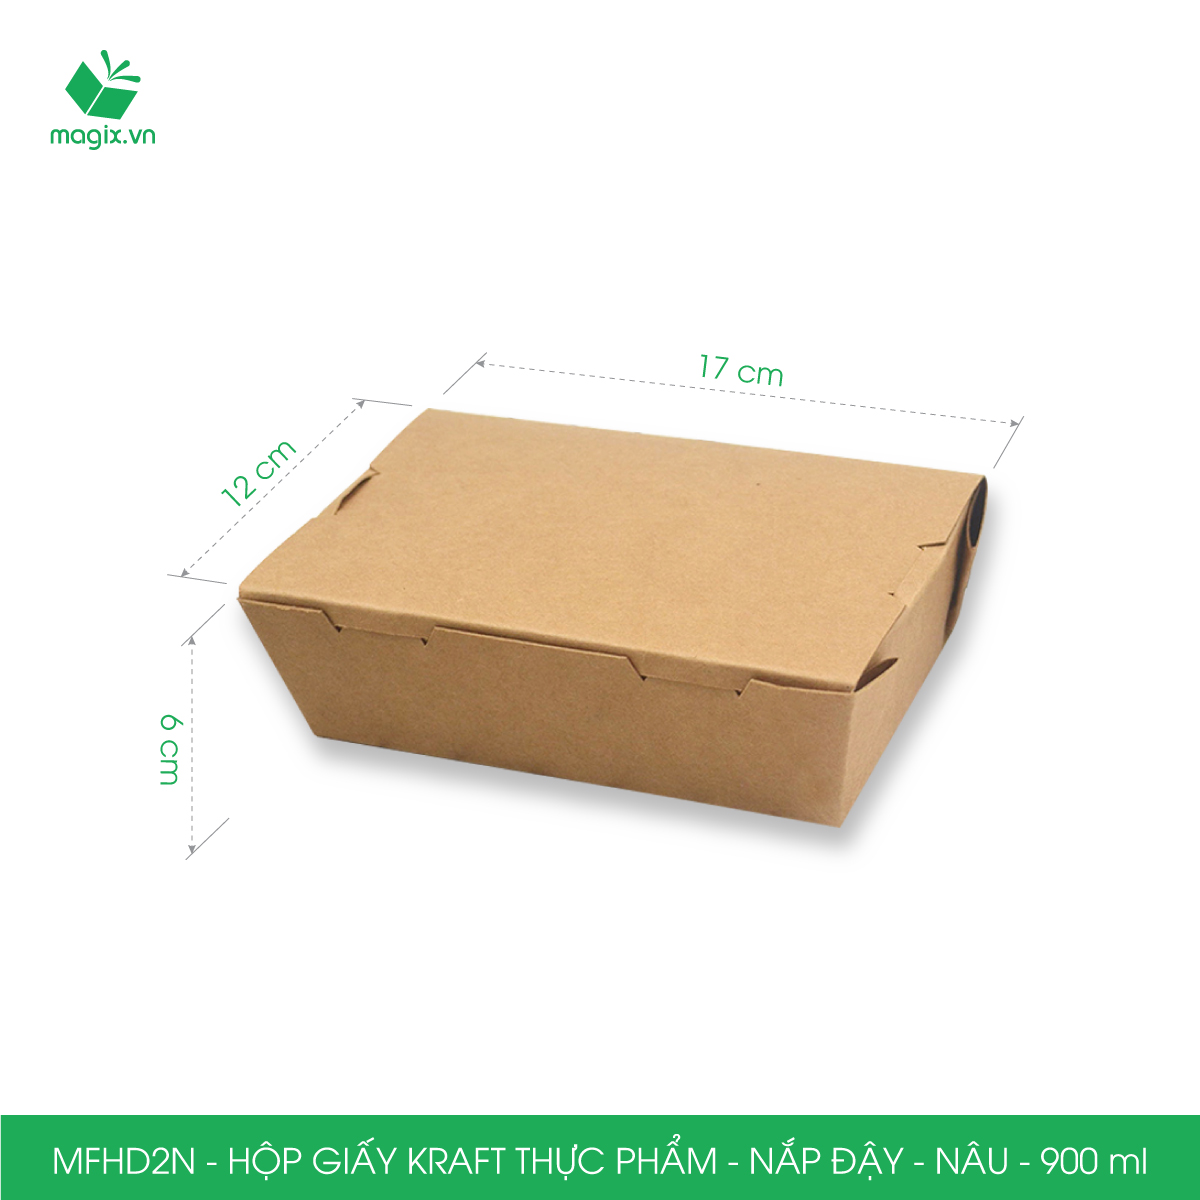 MFHD2N - Combo 100 hộp giấy kraft thực phẩm 900ml, hộp đựng thức ăn nắp đậy màu nâu, hộp gói đồ ăn mang đi